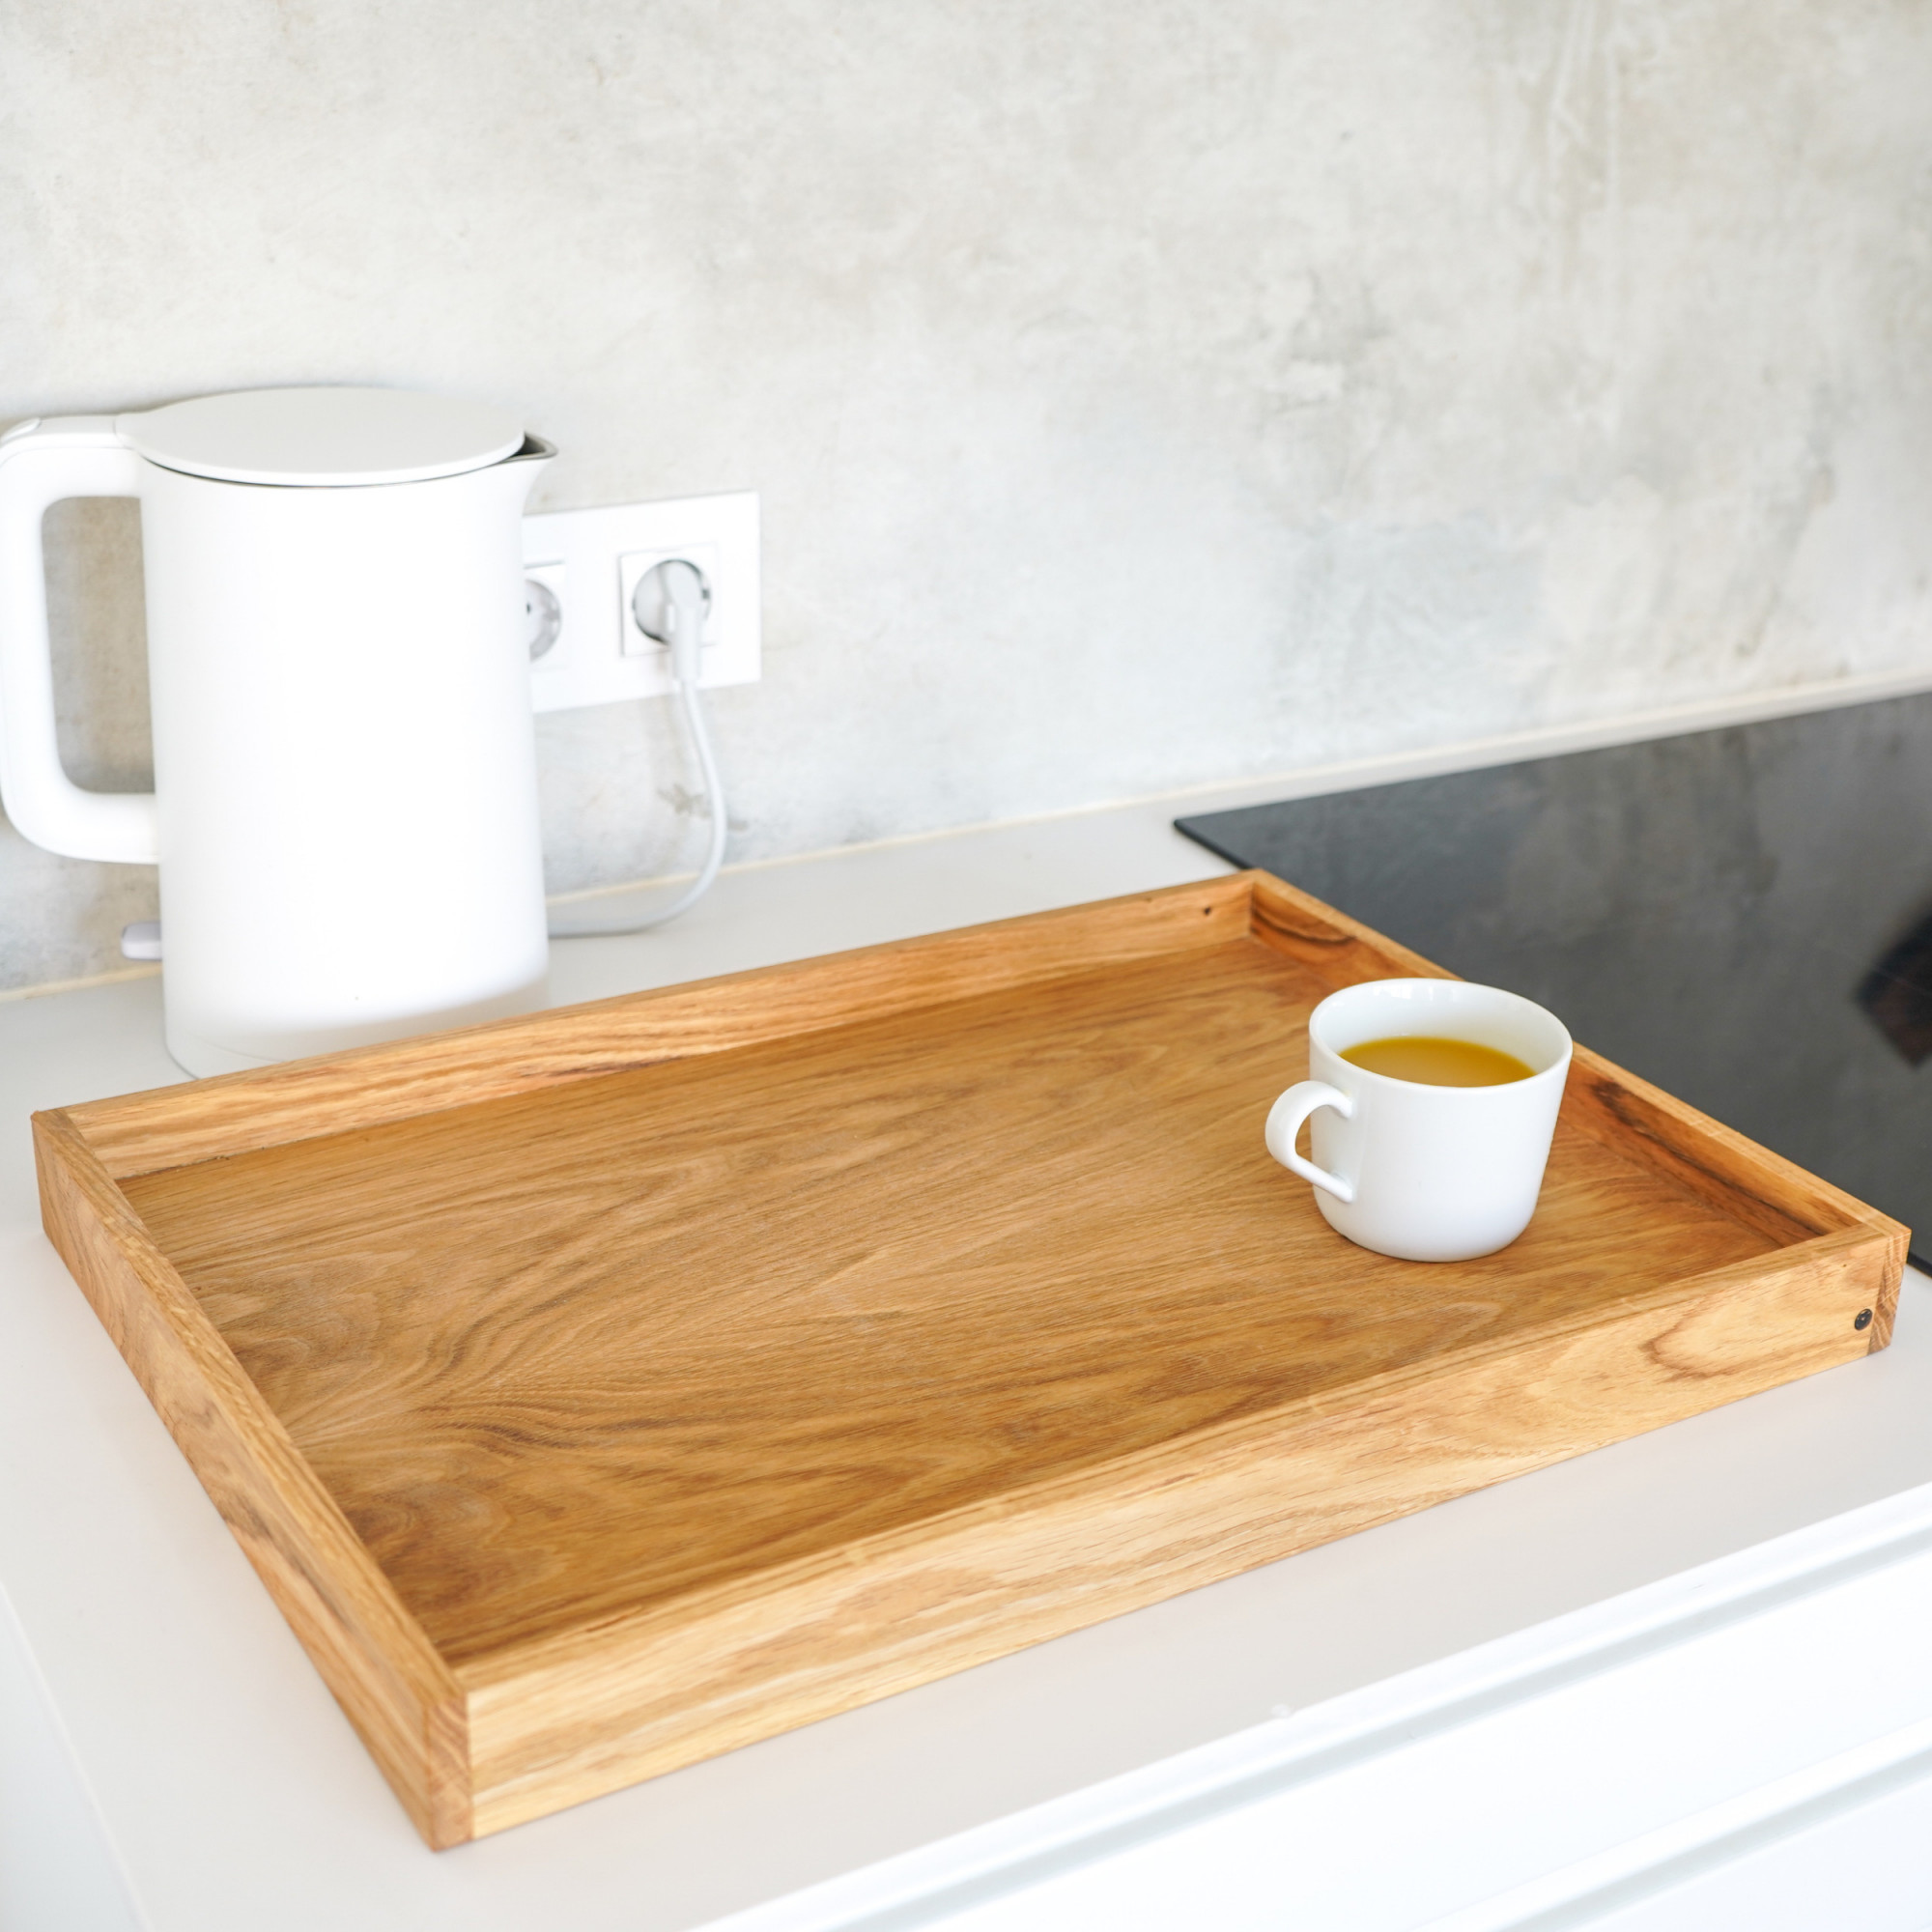 Großes Eichenholz-Tablett auf der Küchenarbeitsplatte